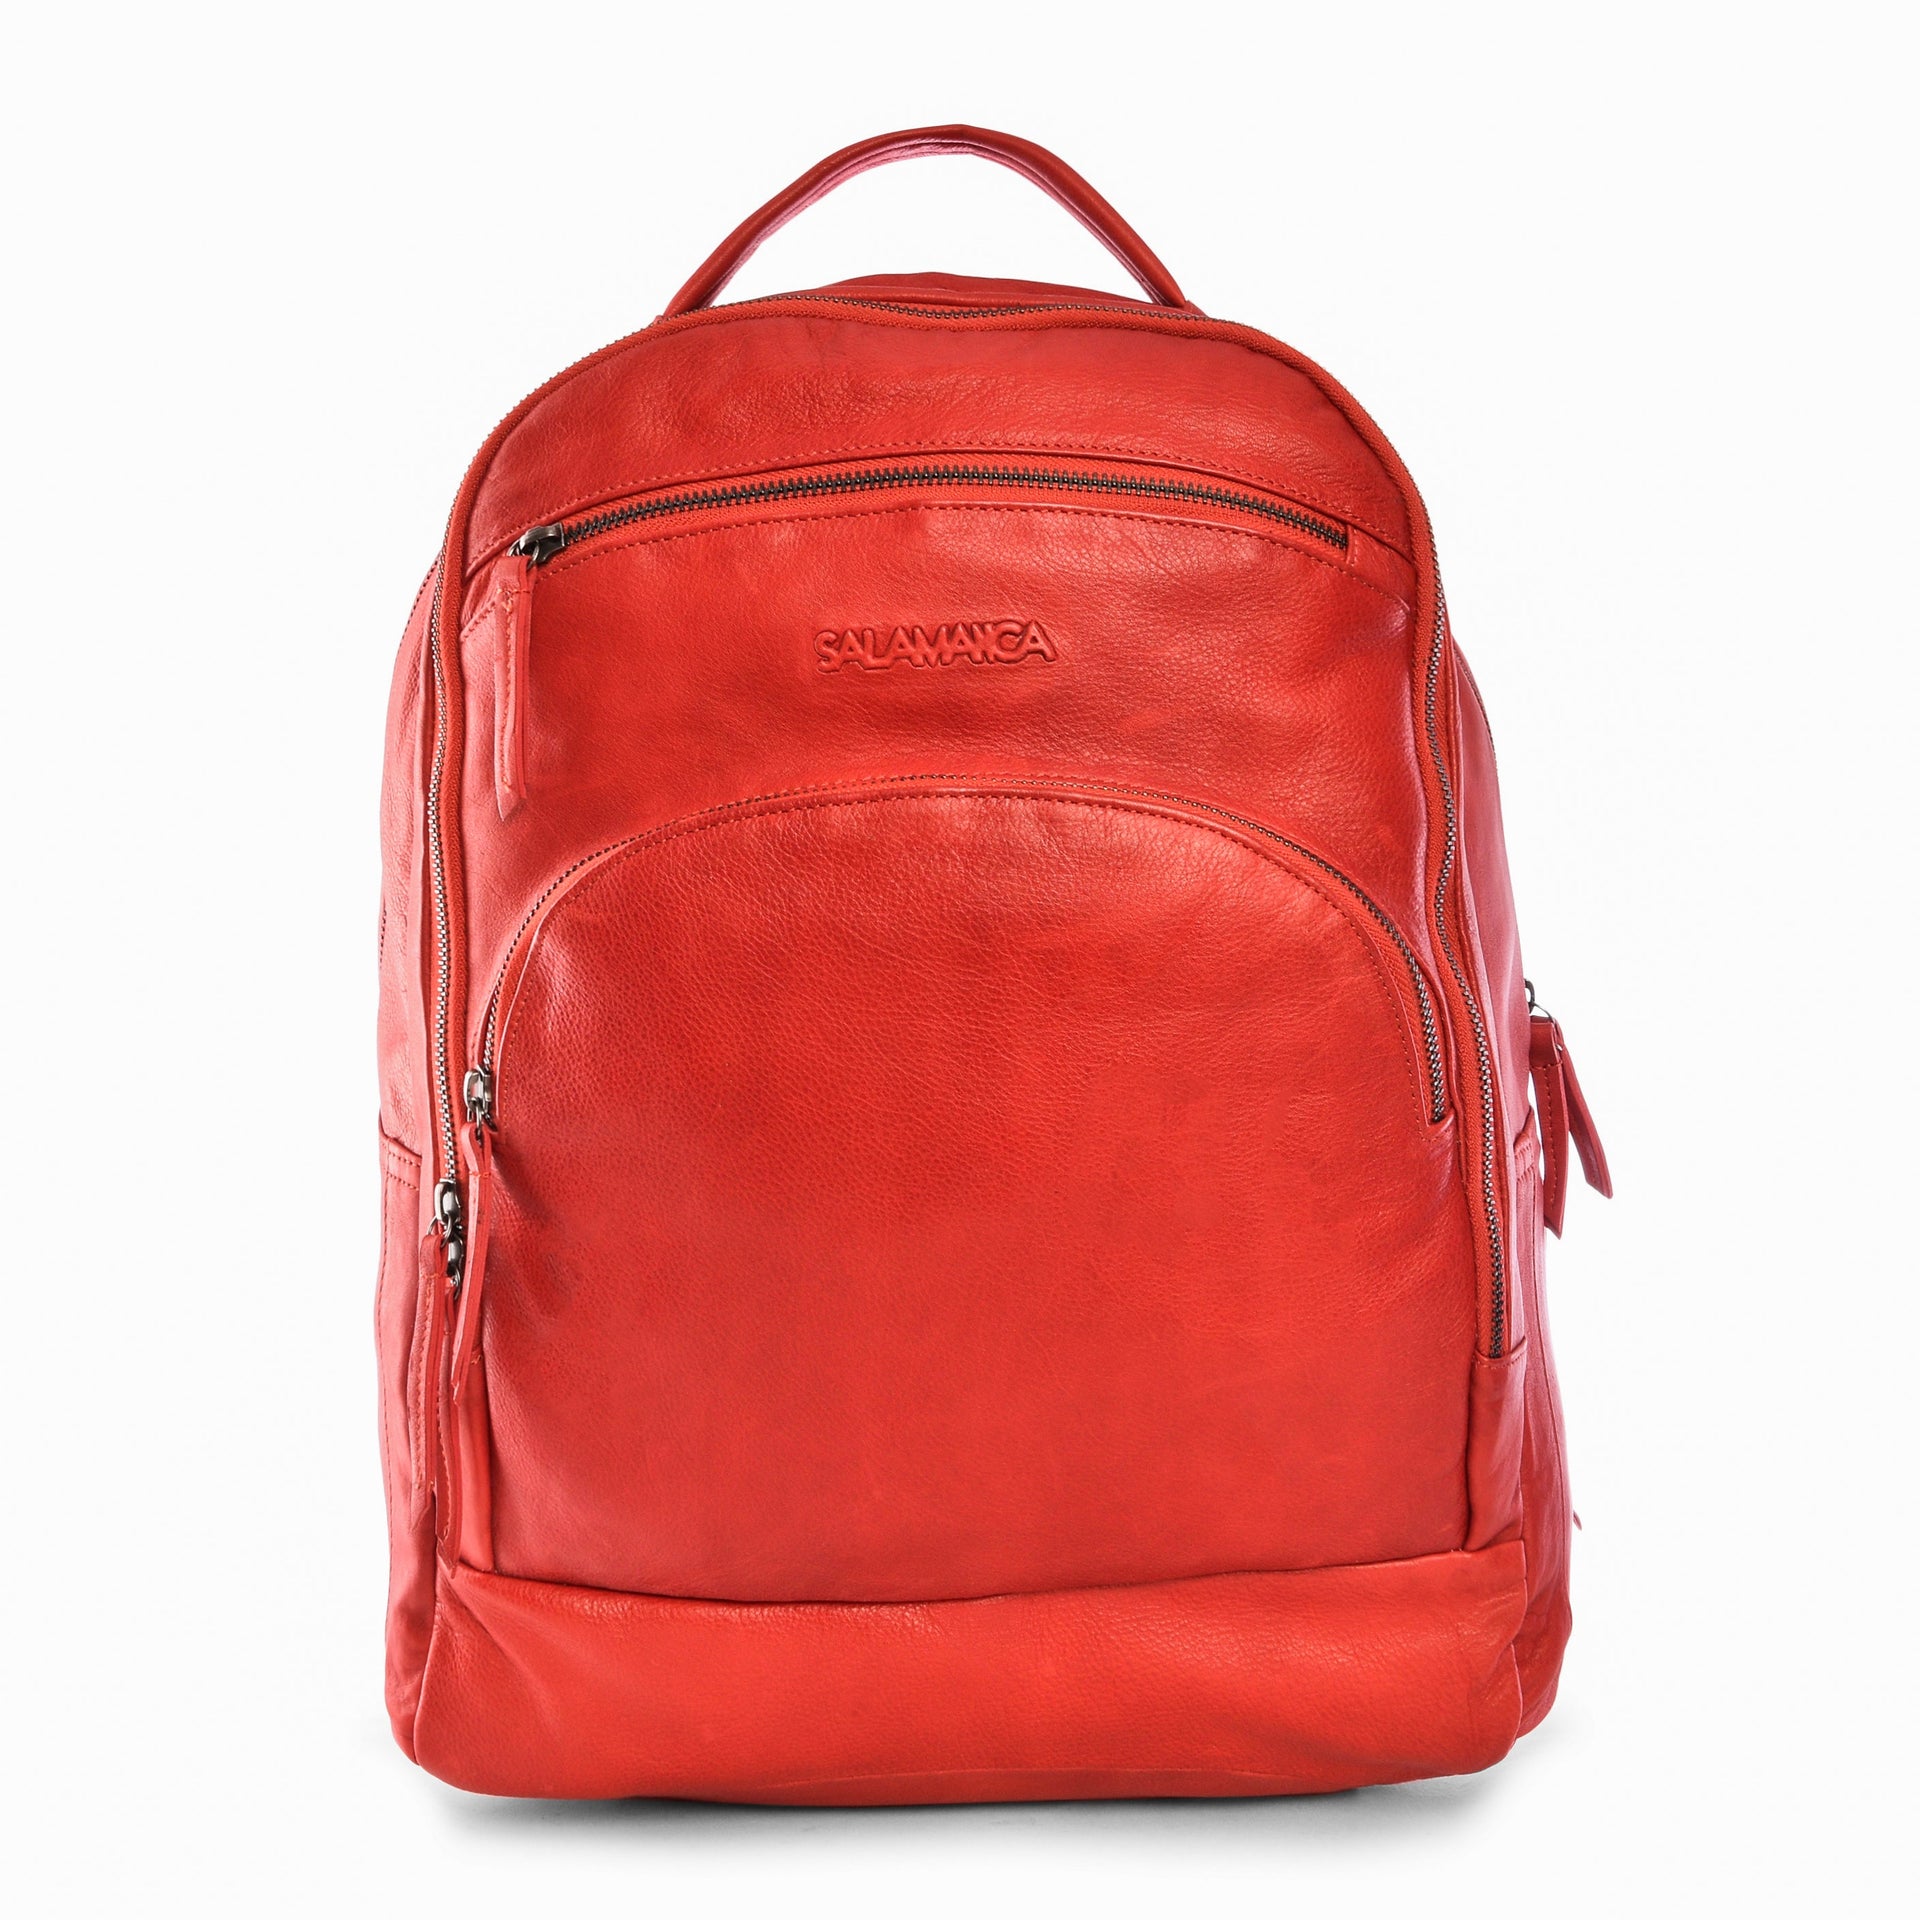 Steve Backpack - Tango Red - Backpack